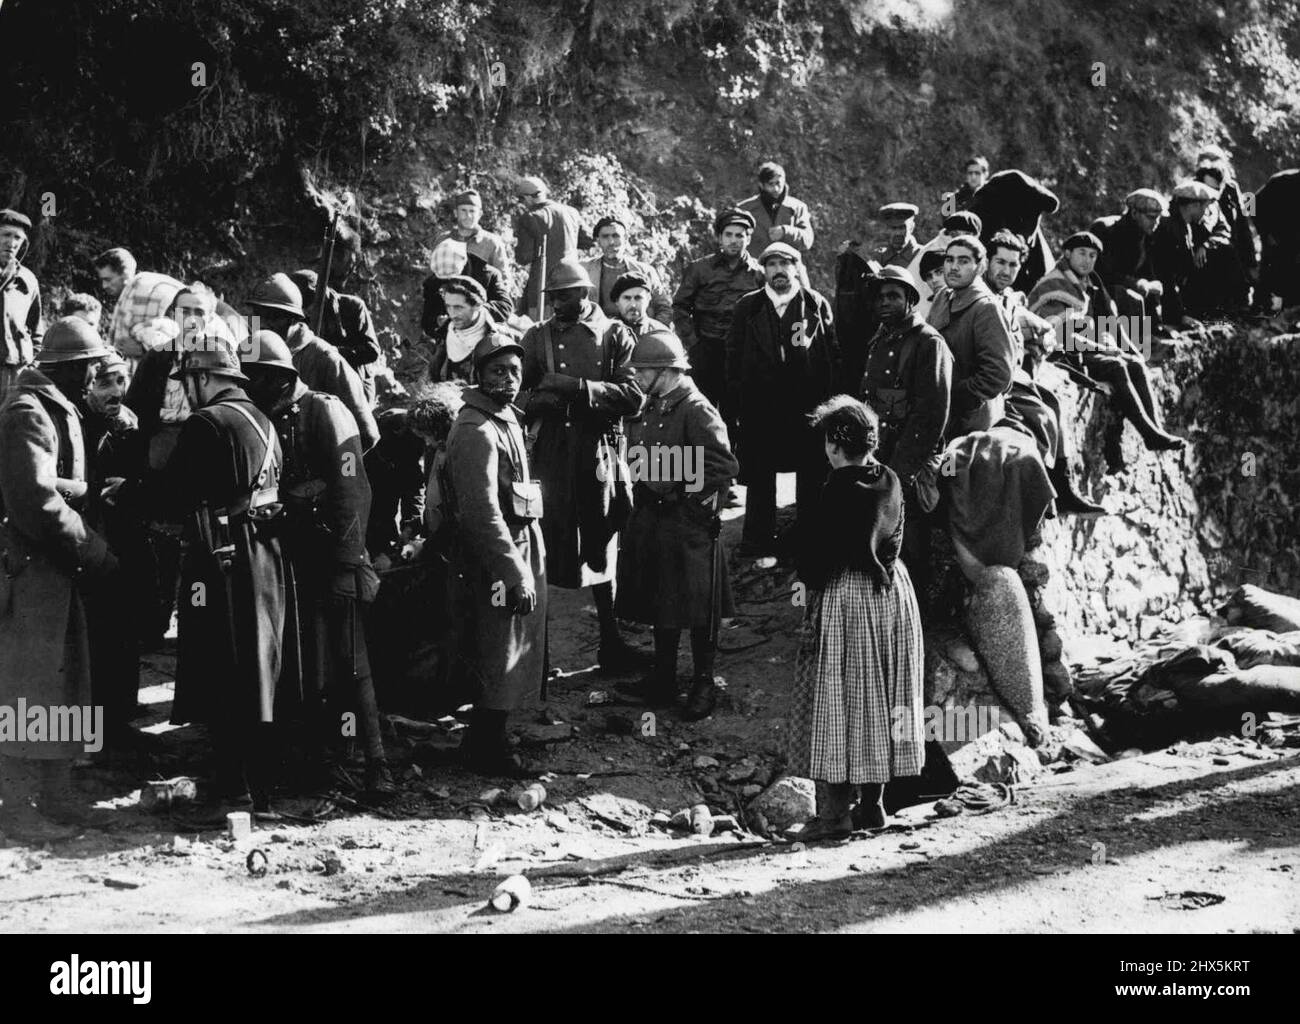 Spanische Flüchtlinge an der französischen Grenze -- Französische Kolonialtruppen kontrollieren den Zustrom von Flüchtlingen in Le Perthos. Tausende spanischer Flüchtlinge sind vor den französischen Truppen geflohen und an der französischen Grenze angekommen. 20. Februar 1939. (Foto von Central Press Photos Ltd.). Stockfoto